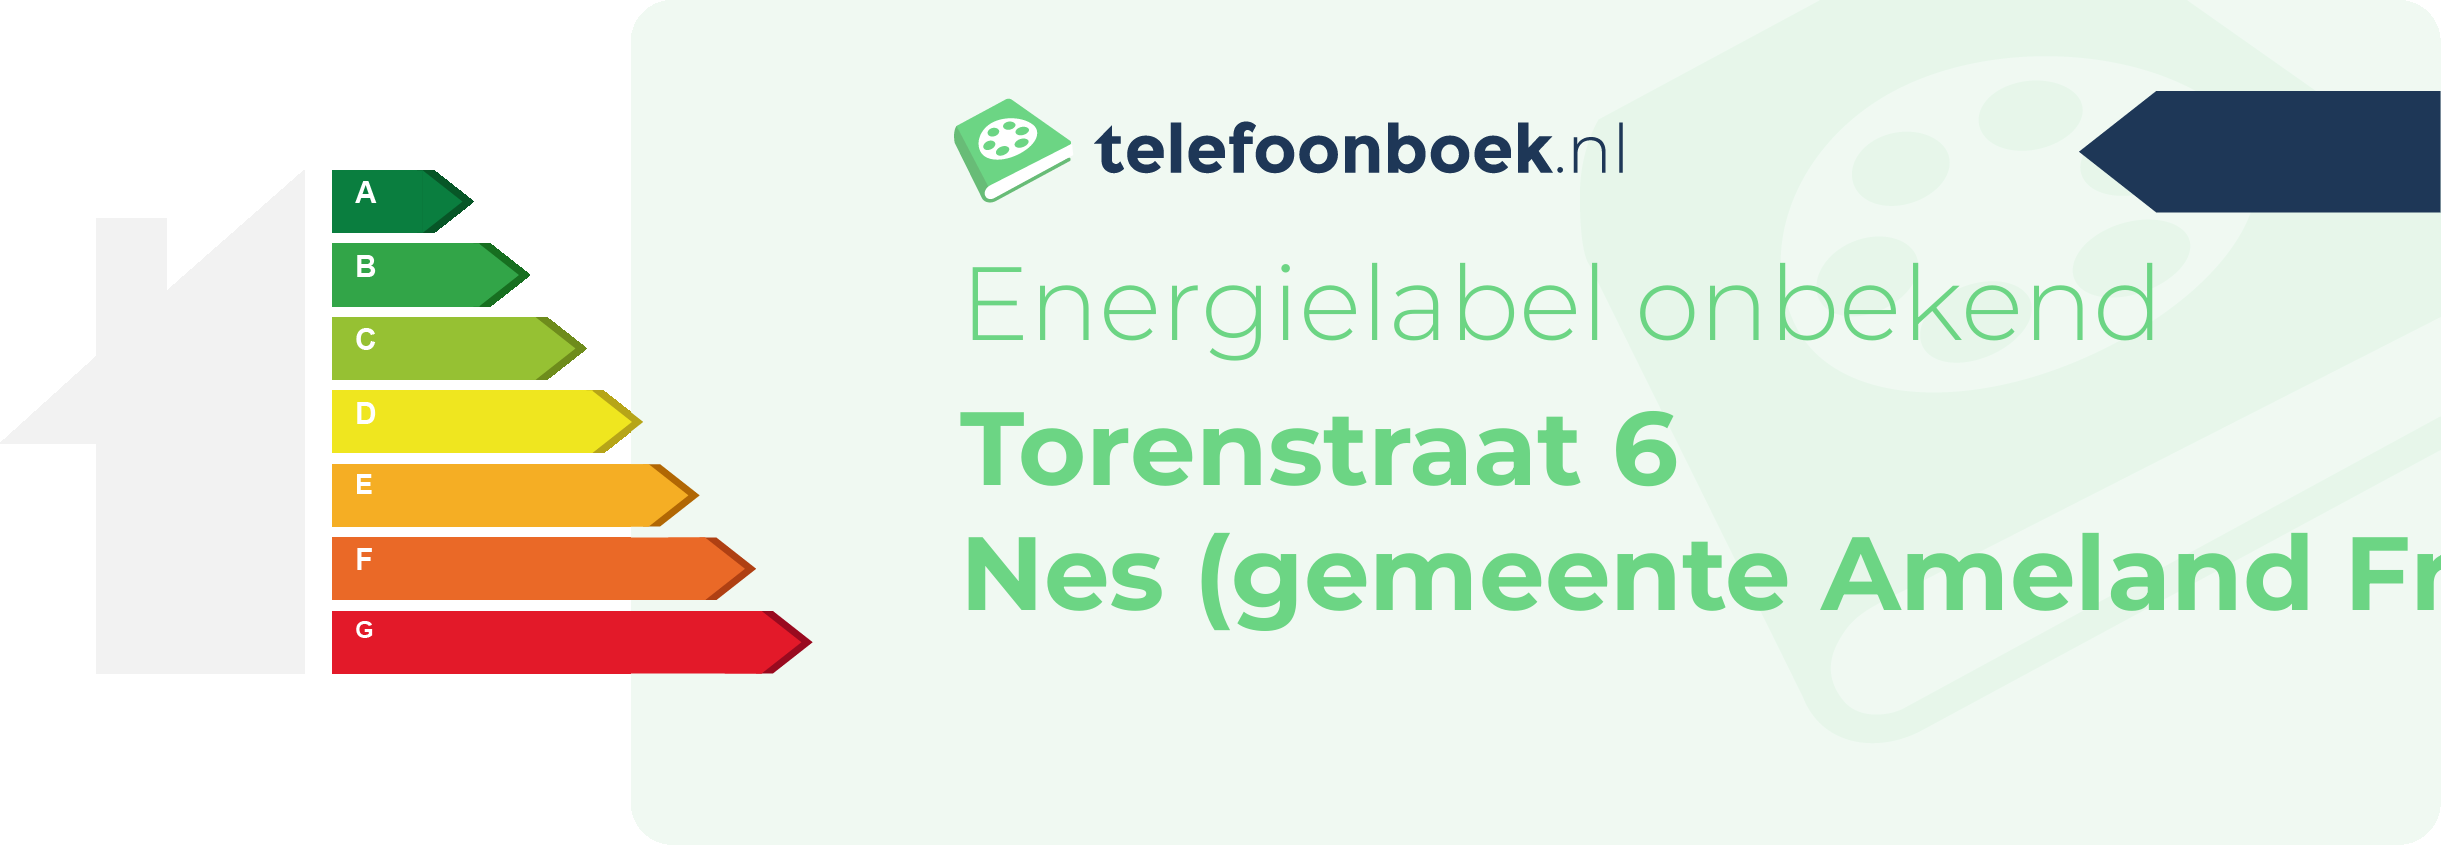 Energielabel Torenstraat 6 Nes (gemeente Ameland Friesland)